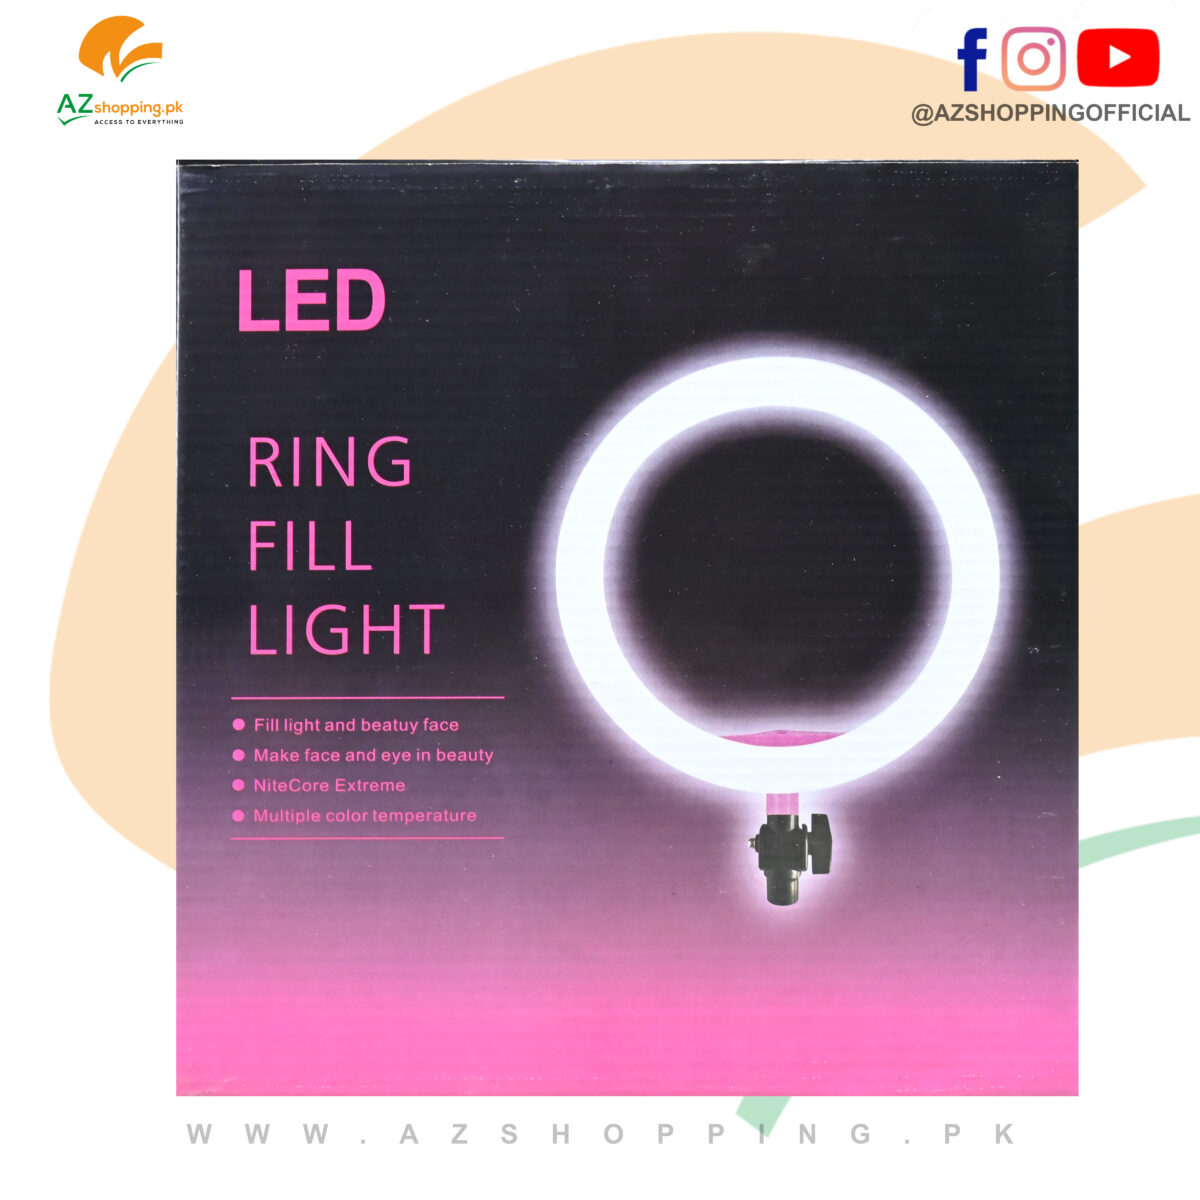 LED Ring Fill Light with Mobile Phone Cell Holder – 26cm Selfie Ring Light – 3 Modes Light (White, Warm, Soft light)